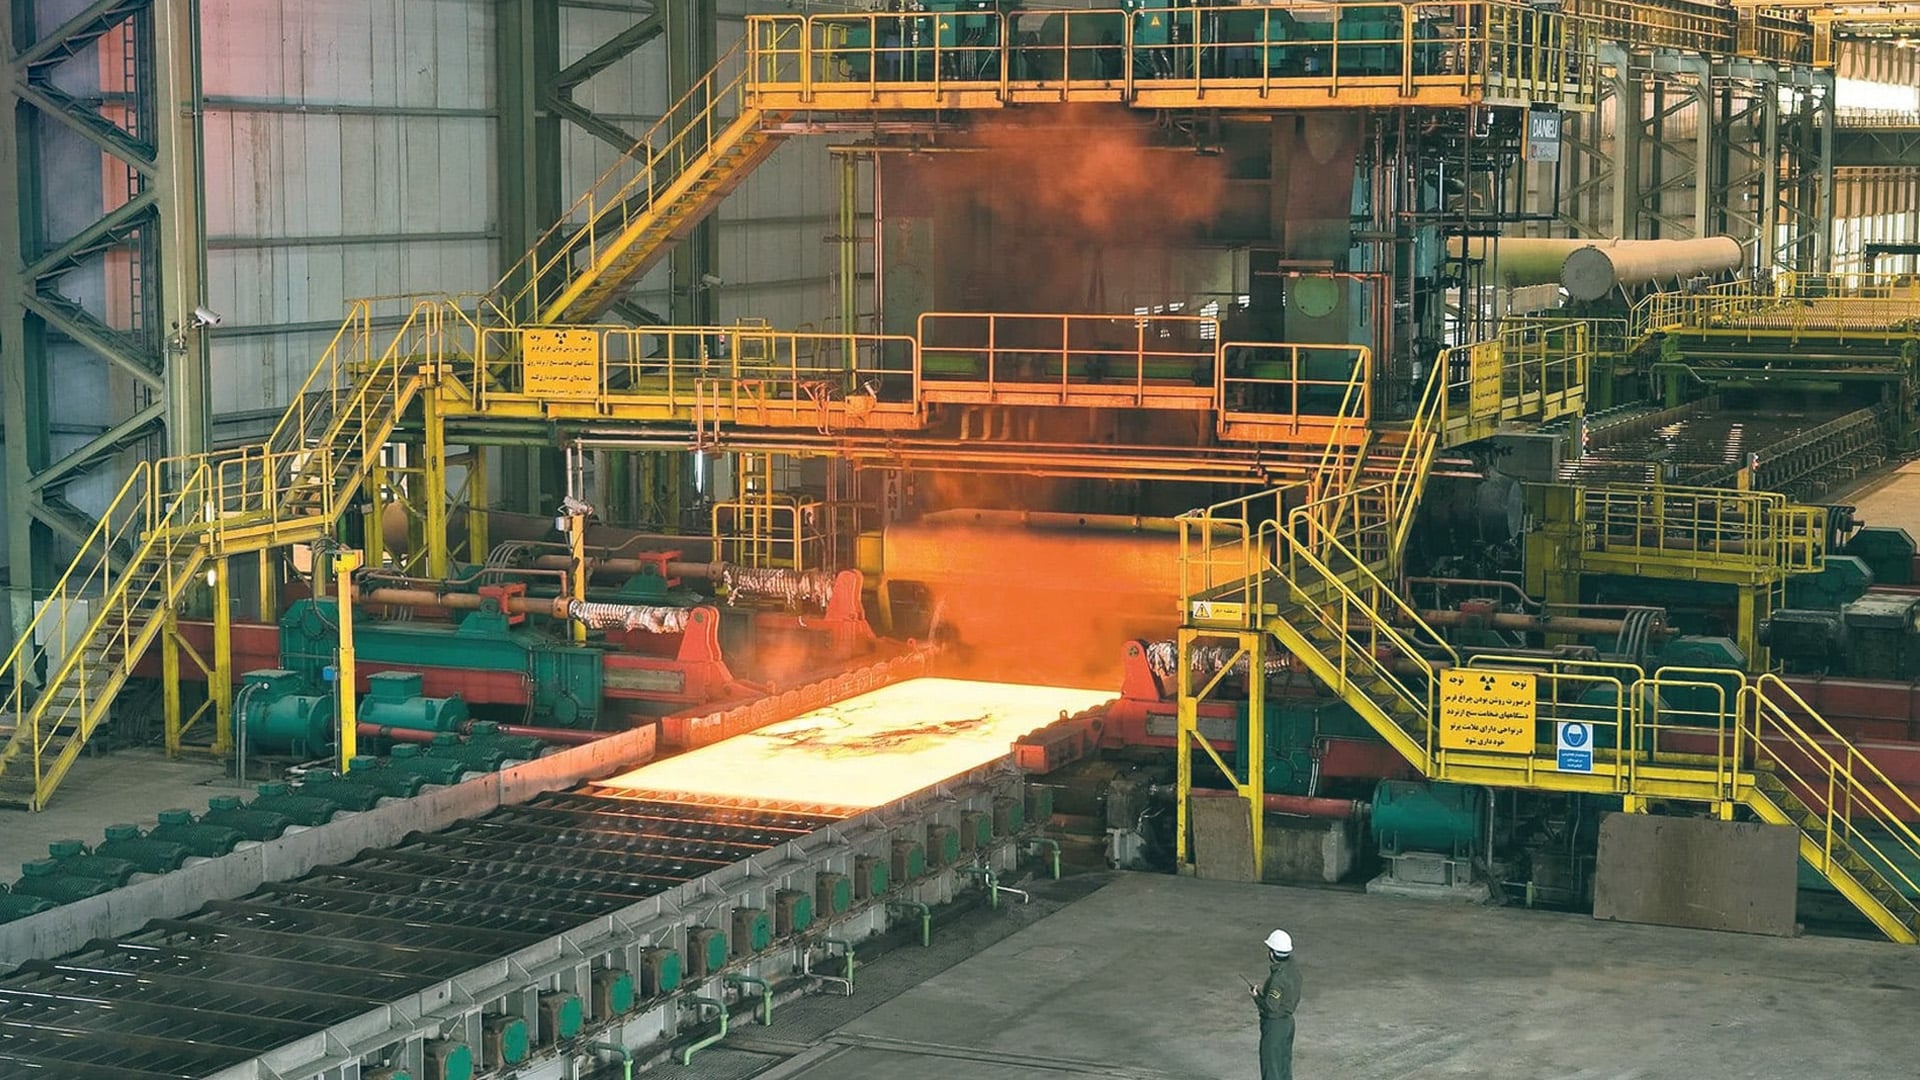 JSW Steel raises USD 1 billion from offshore bond sales